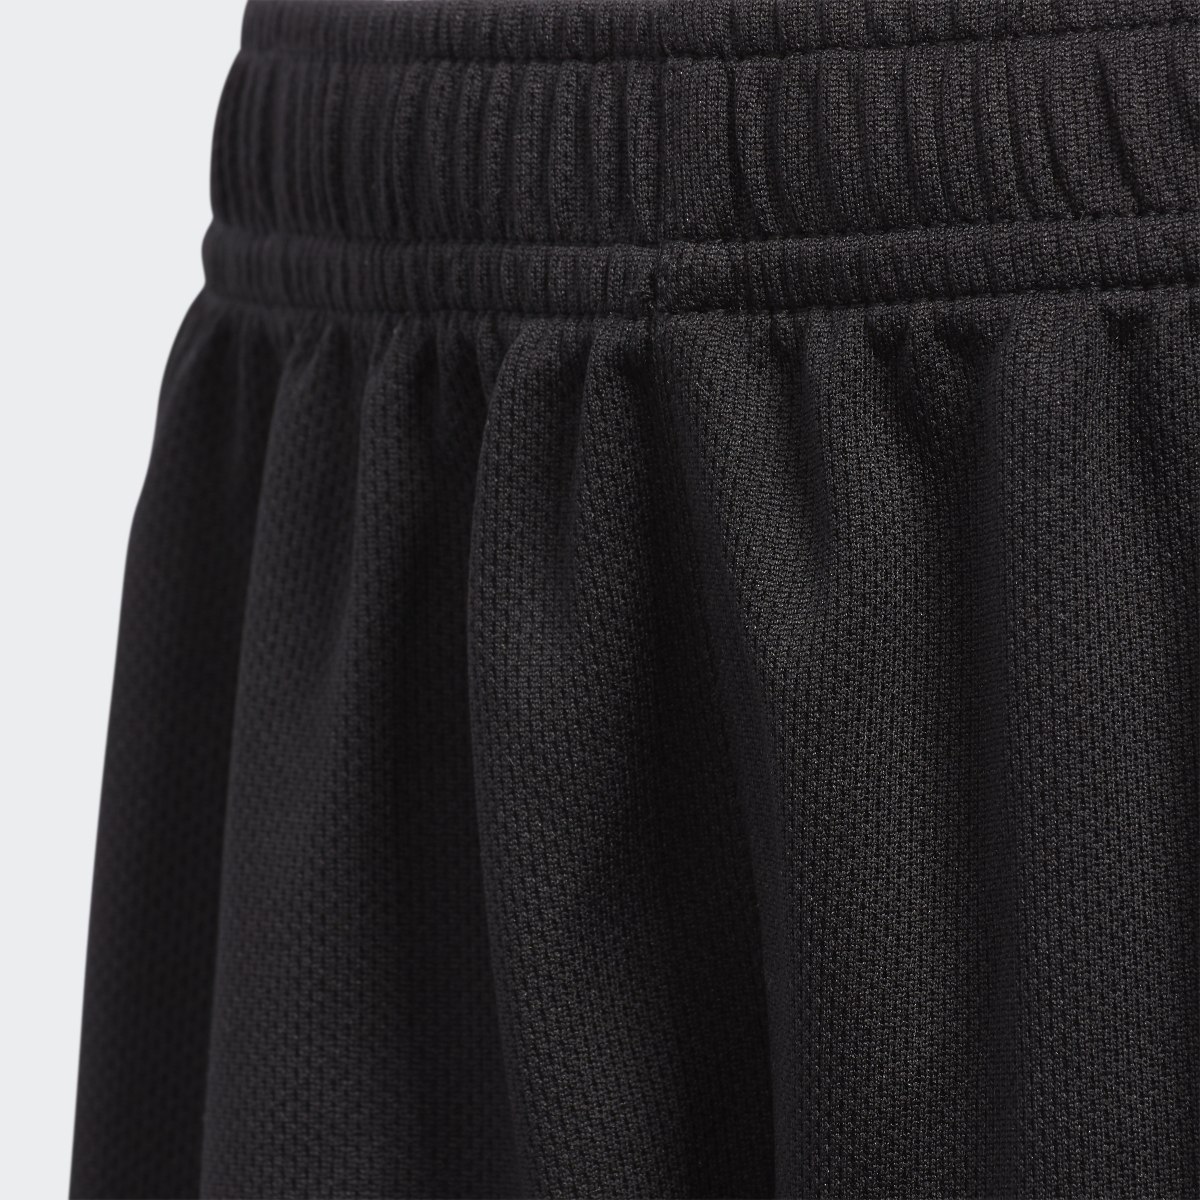 Adidas 3-Stripes Mesh Shorts. 4